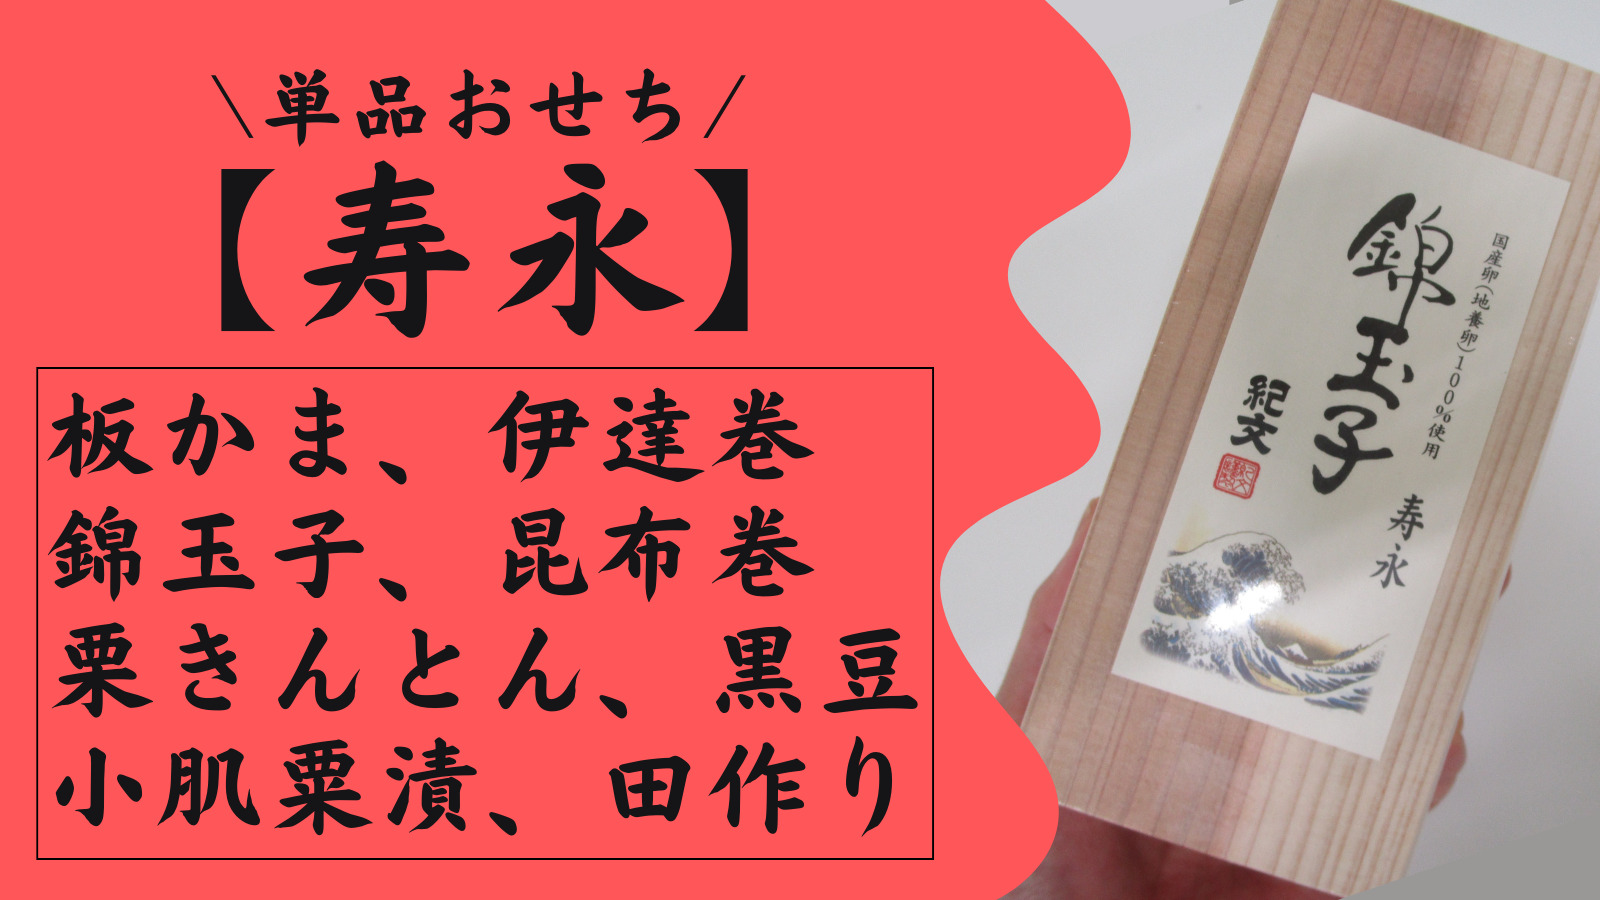 紀文食品の寿永シリーズは原料にこだわっていて本当においしい。